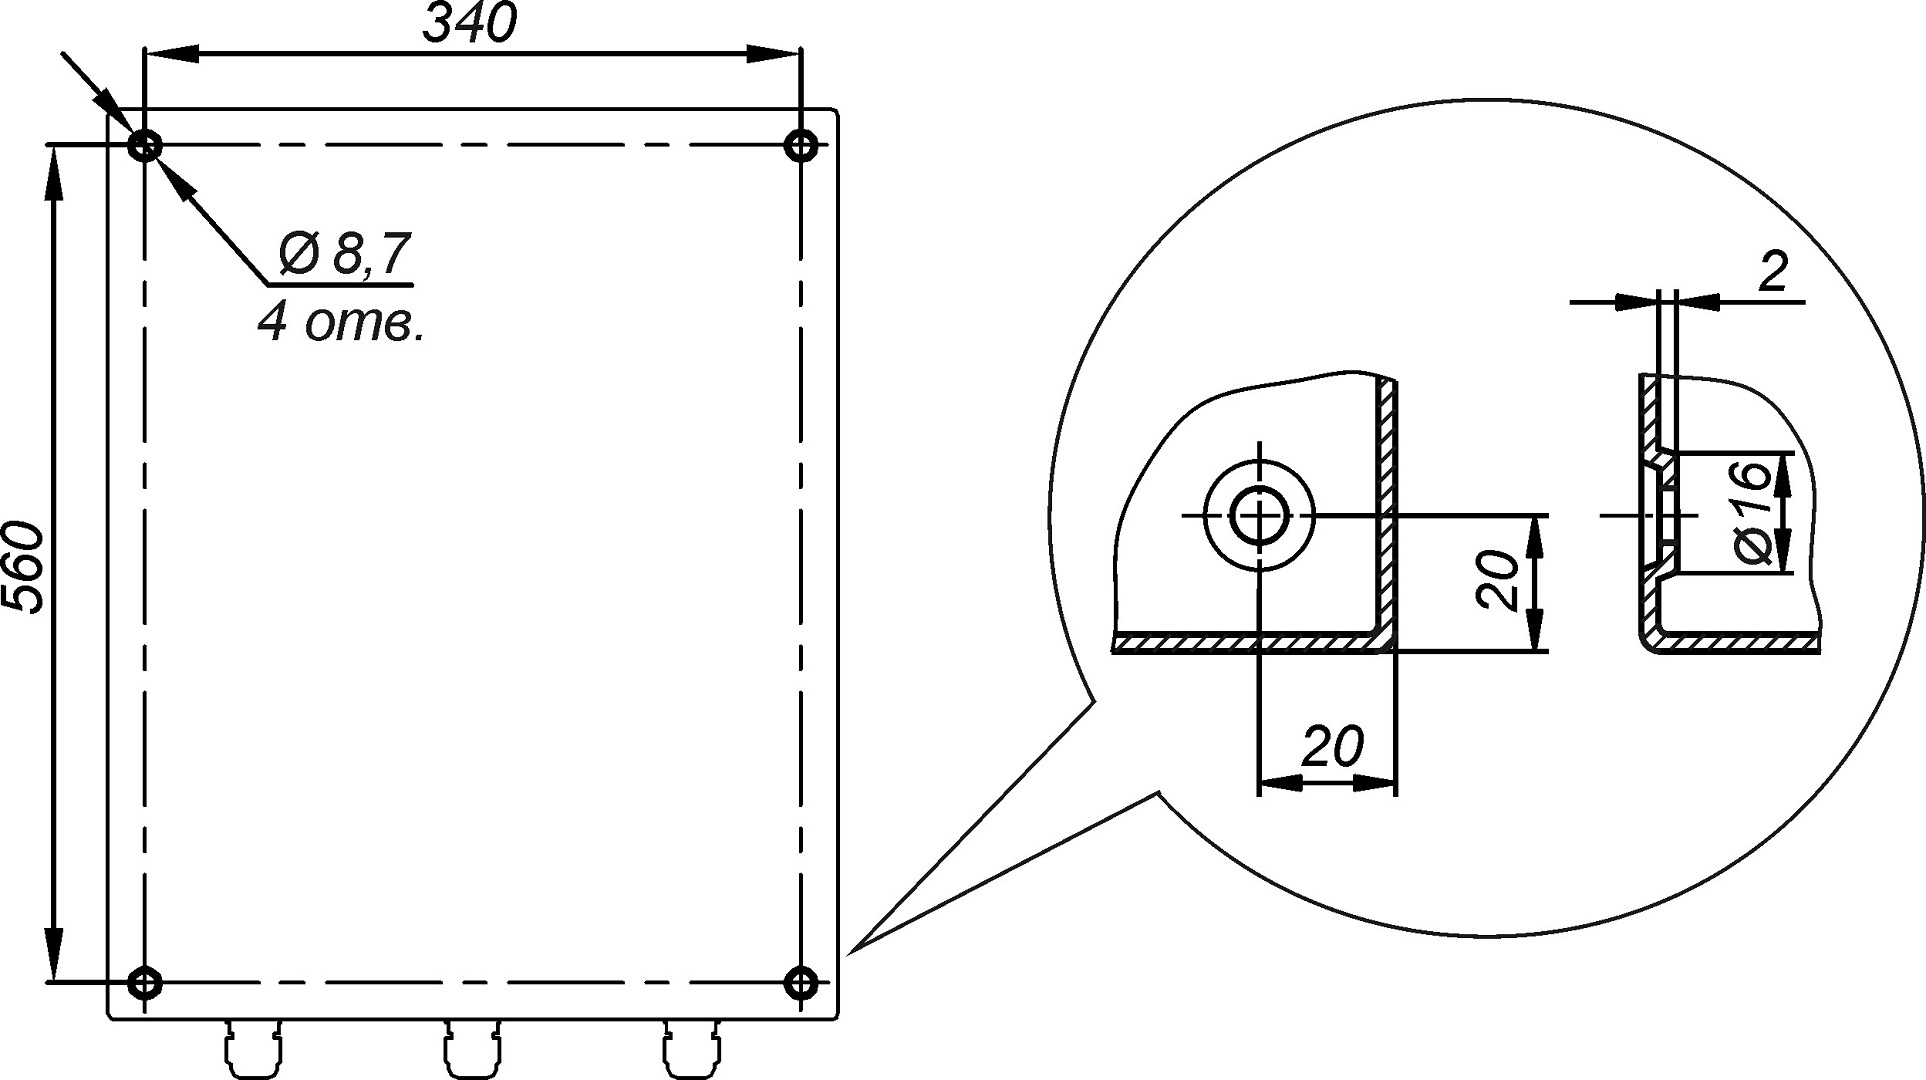 Отверстия для крепления к стене предусмотрены на задней стенке термошкафа ТШВ-38.60.35.160